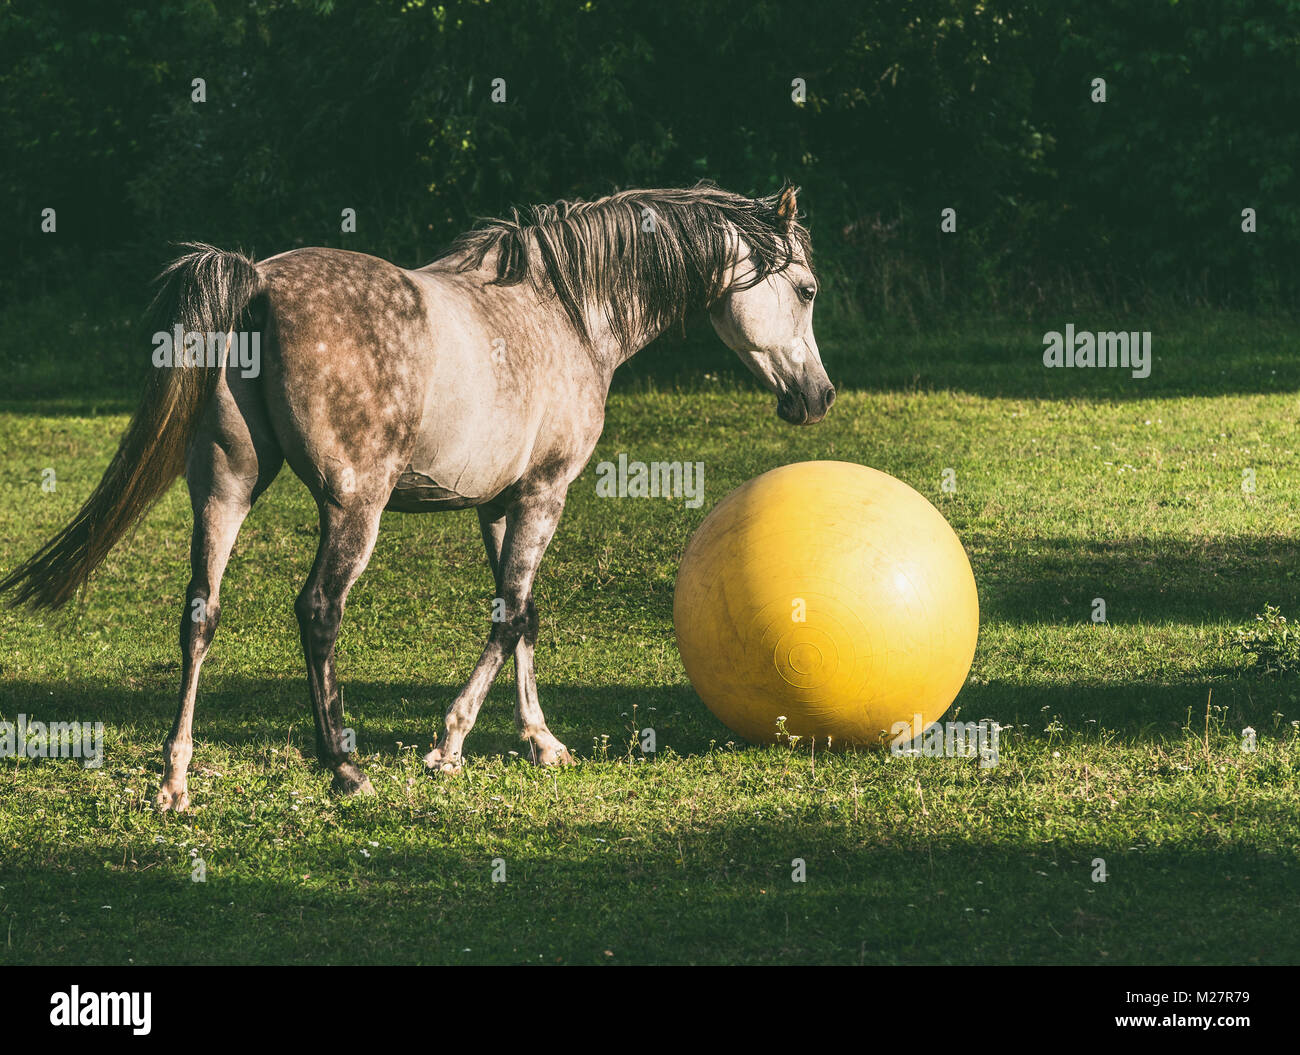 Arabian Horse Ball spielen auf grünem Gras Stockfoto